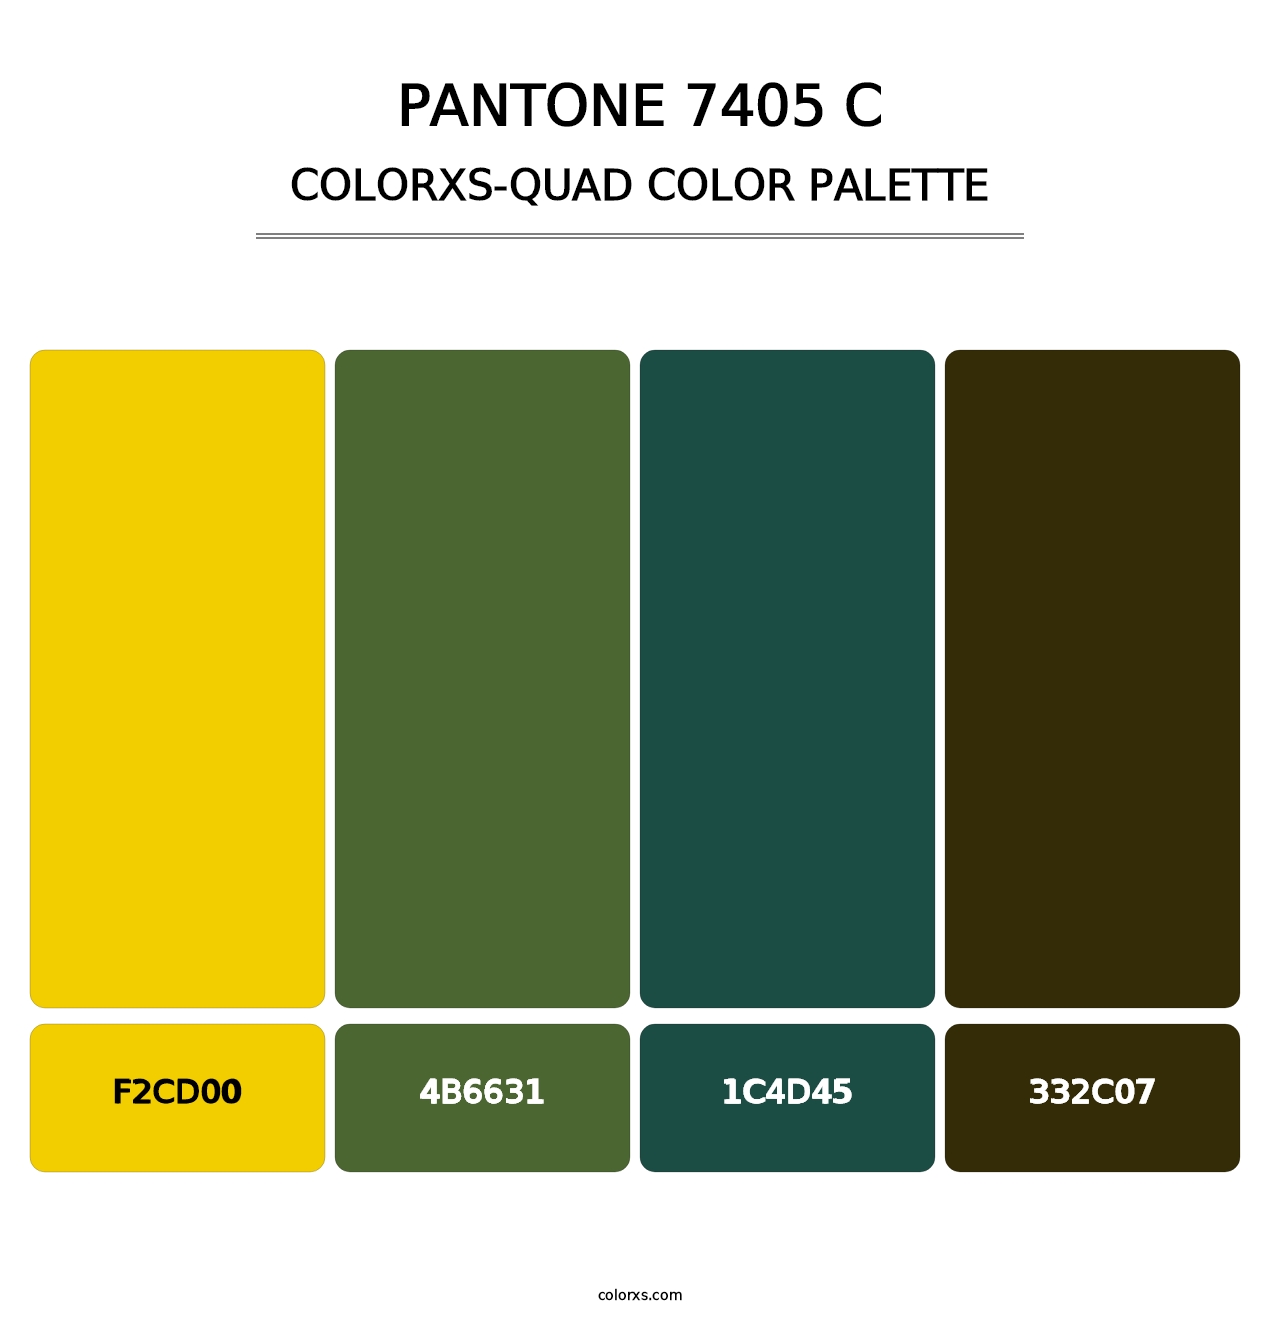 PANTONE 7405 C - Colorxs Quad Palette